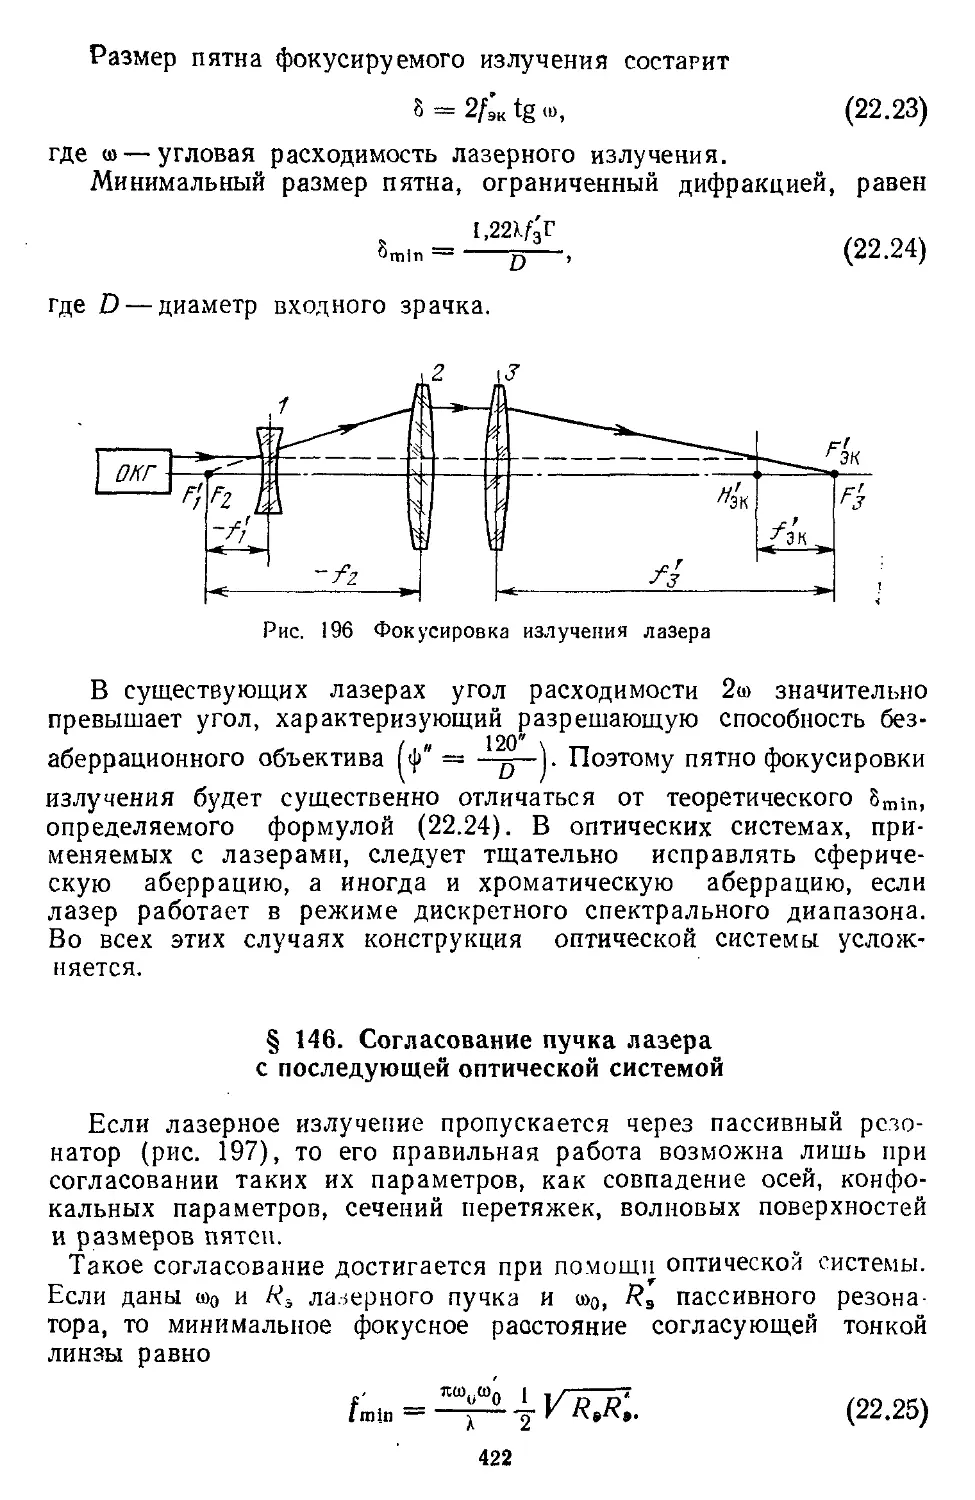 § 146. Согласование пучка лазера с последующей оптической системой